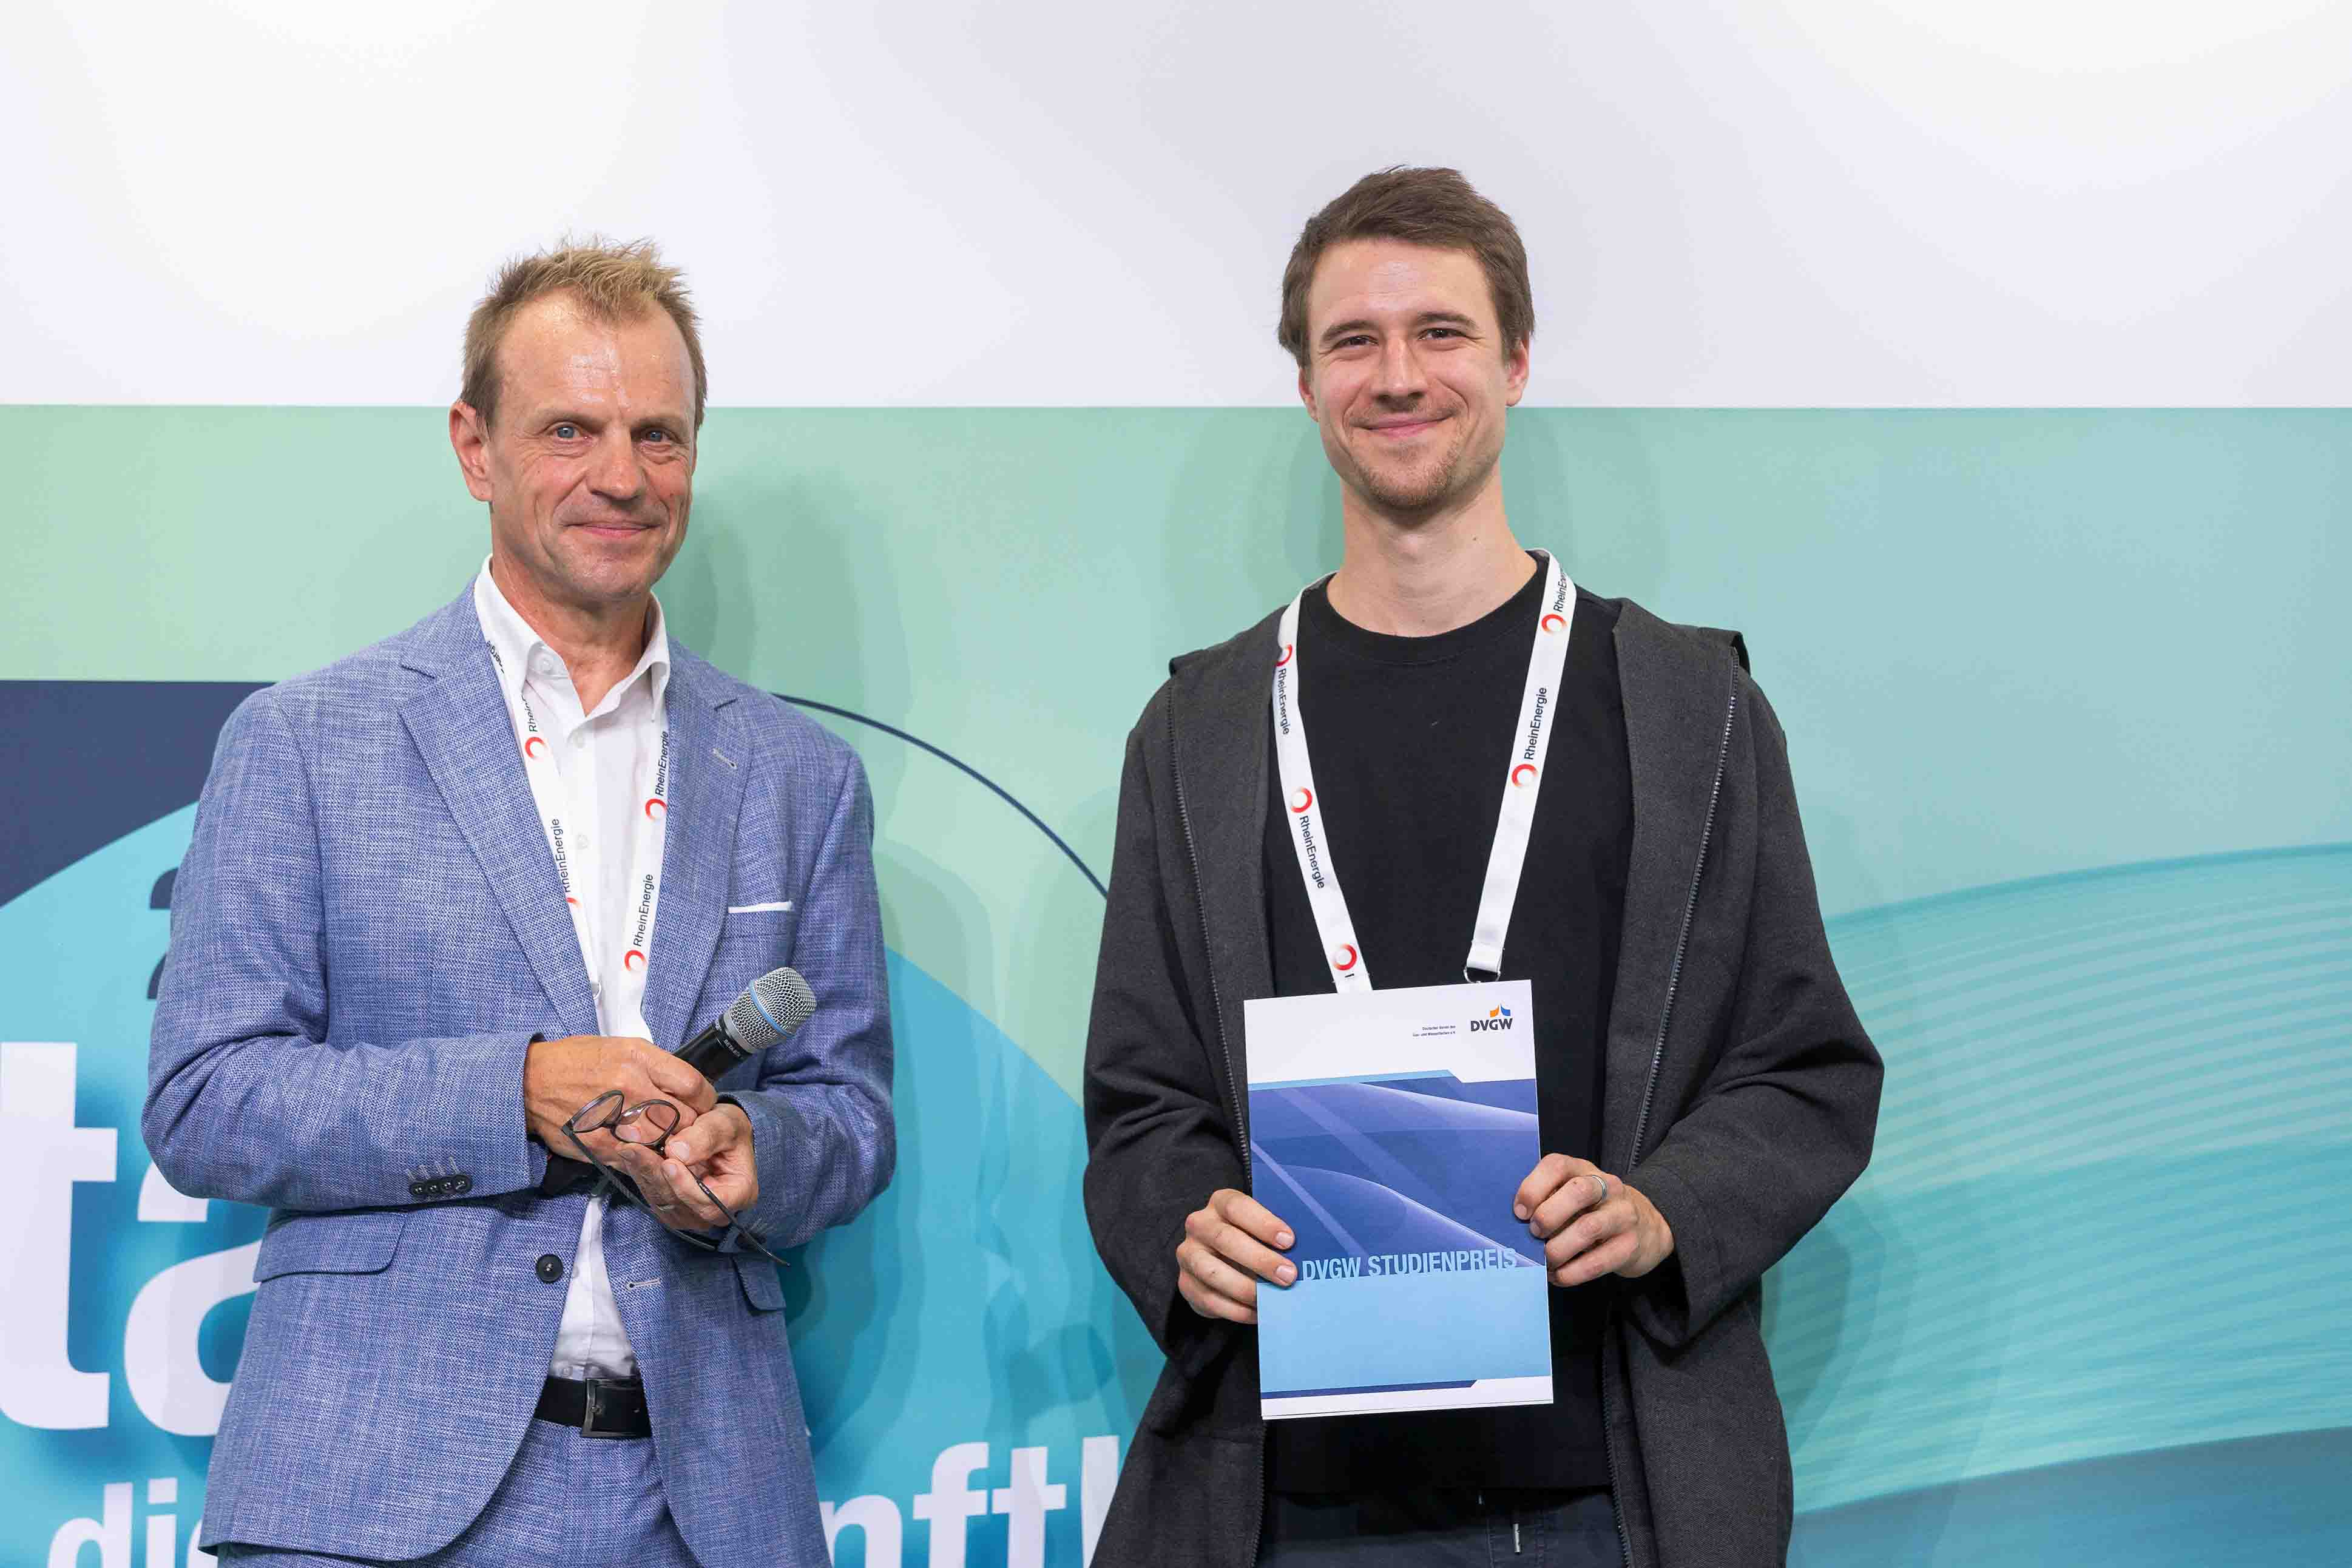 Christoph Jeromin, DVGW-Vizepräsident Wasser, und der Preisträger des Studienpreises Wasser stehen nebeneinander, Ullmann hält seine Urkunde vor den Bauch